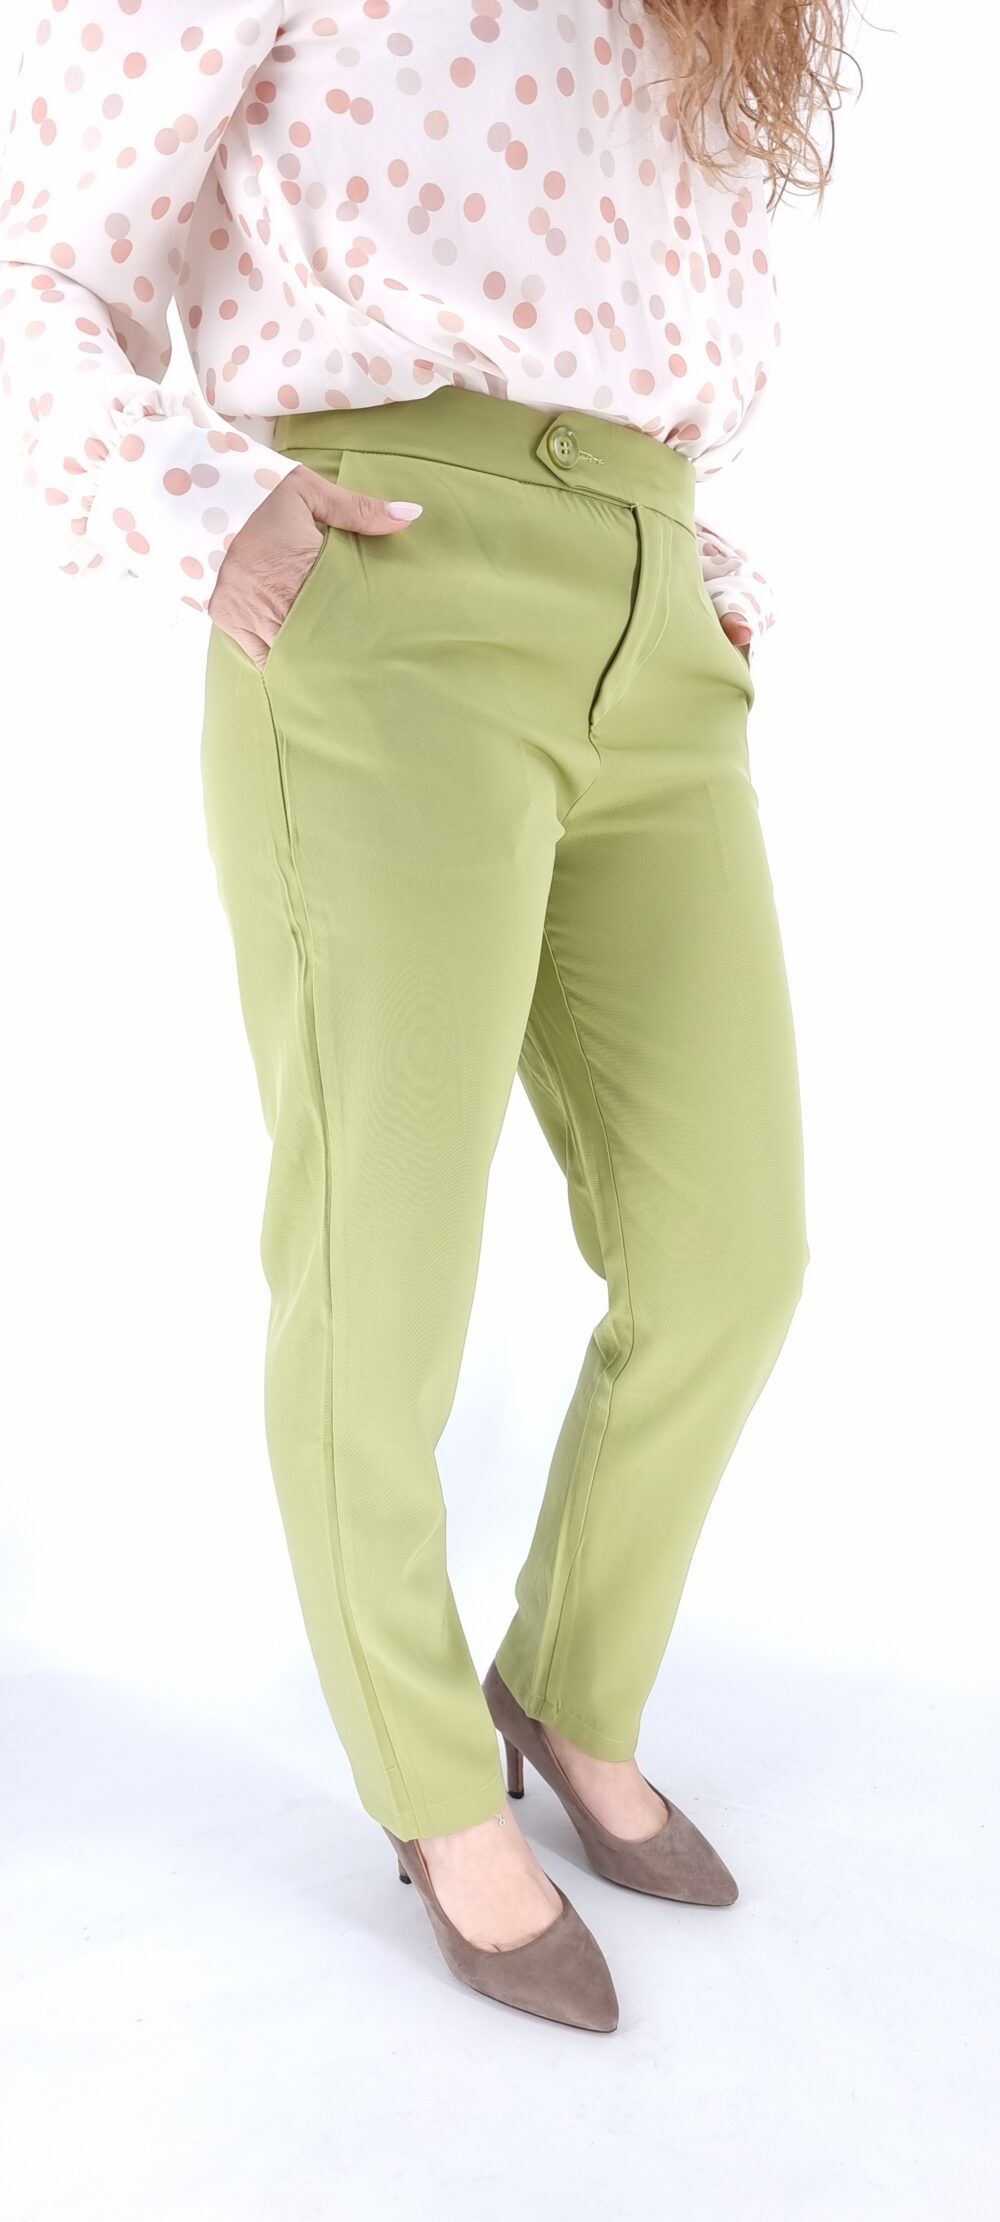 Σετ κουστούμι με σακάκι μακρύ και υφασμάτινο παντελόνι πράσινο